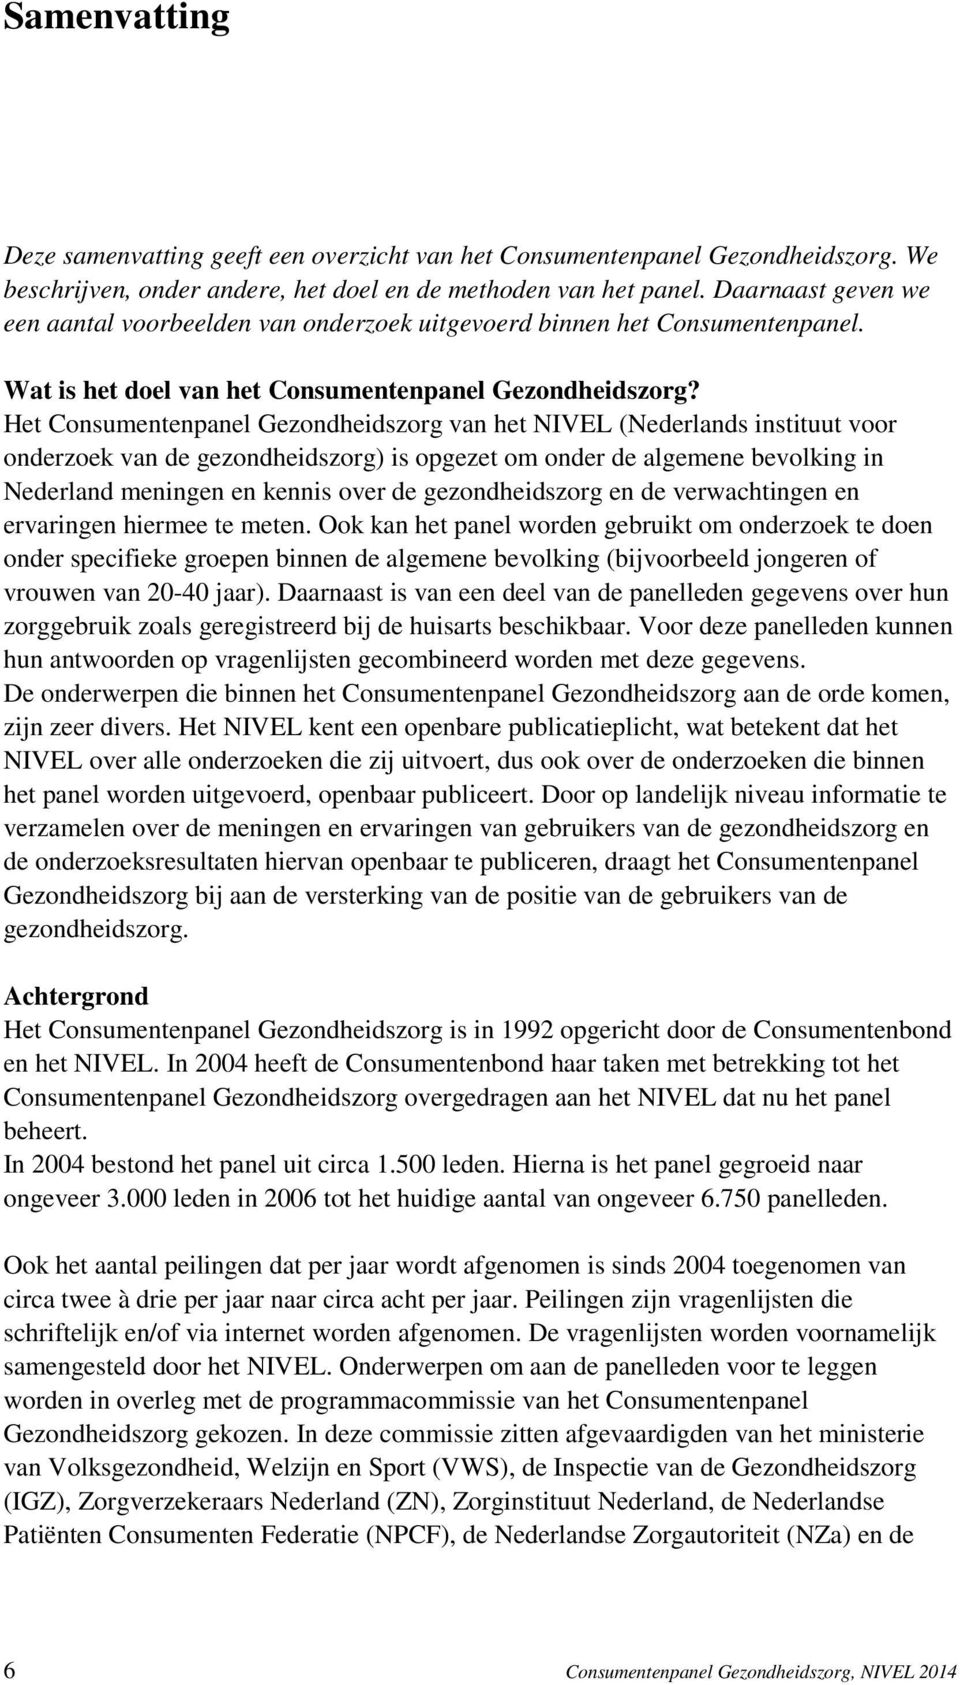 Het Consumentenpanel Gezondheidszorg van het NIVEL (Nederlands instituut voor onderzoek van de gezondheidszorg) is opgezet om onder de algemene bevolking in Nederland meningen en kennis over de